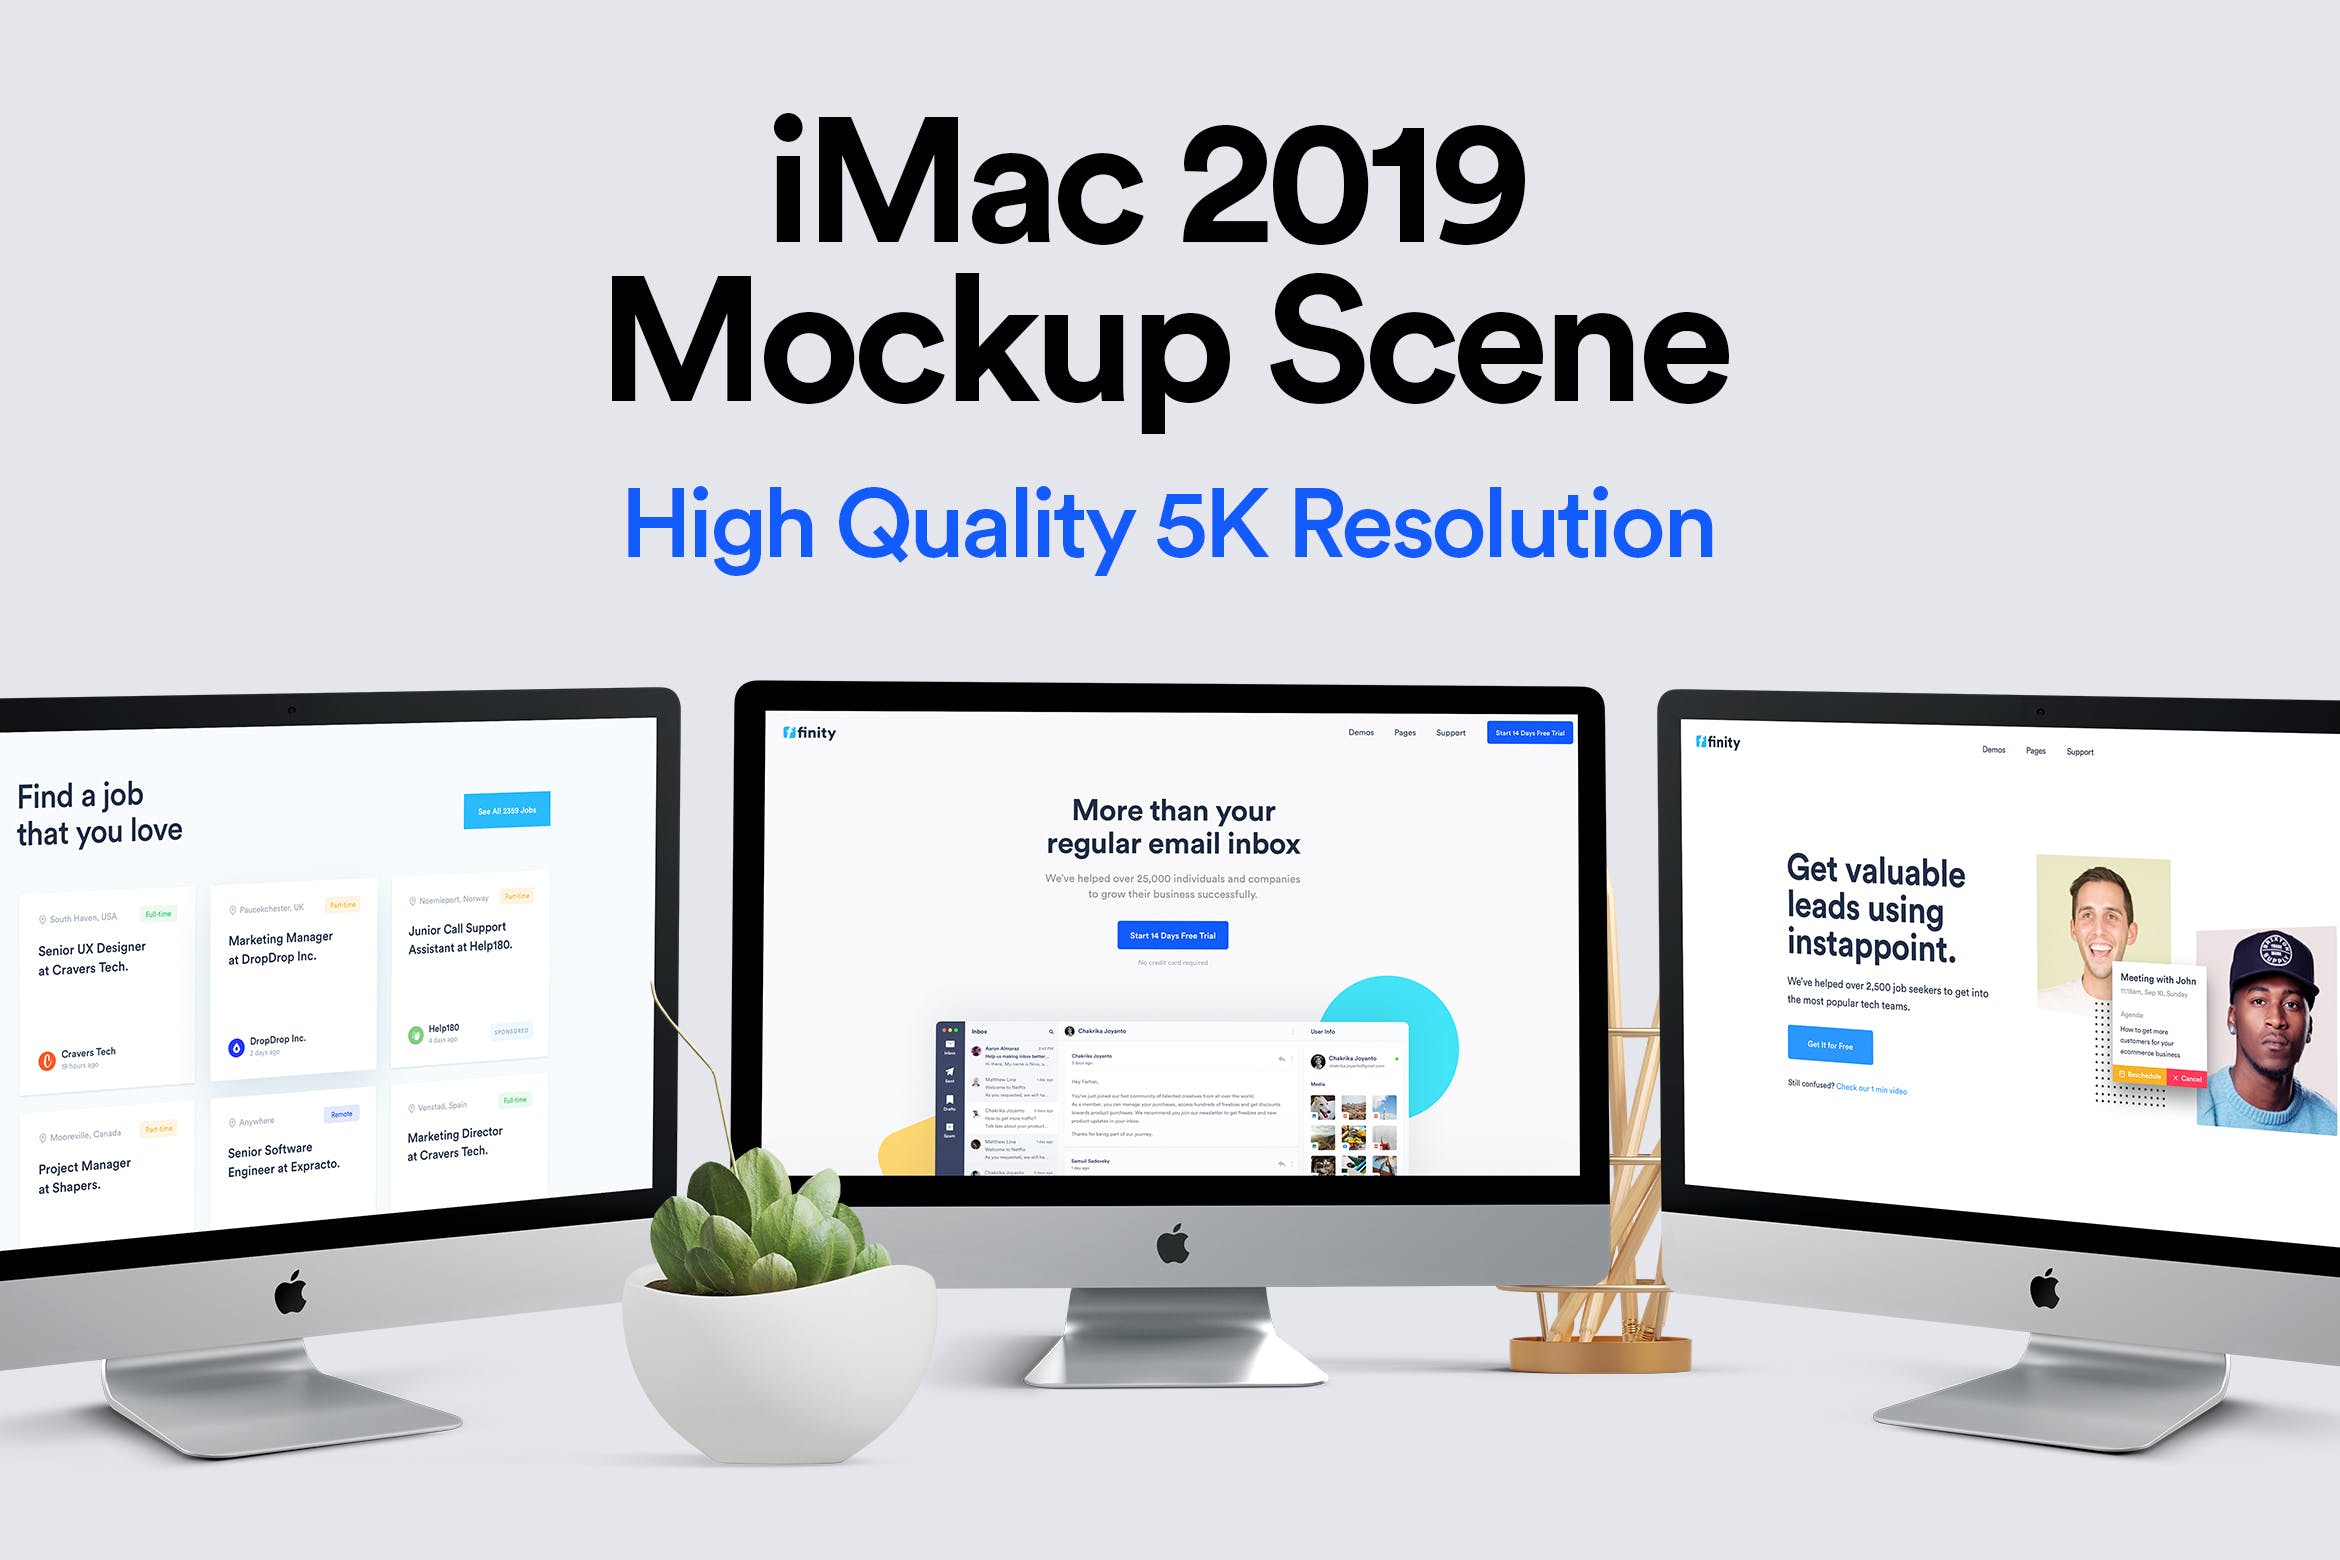 2019款iMac一体机电脑多屏幕预览第一素材精选样机模板 iMac 2019 Mockup – Multi Devices插图